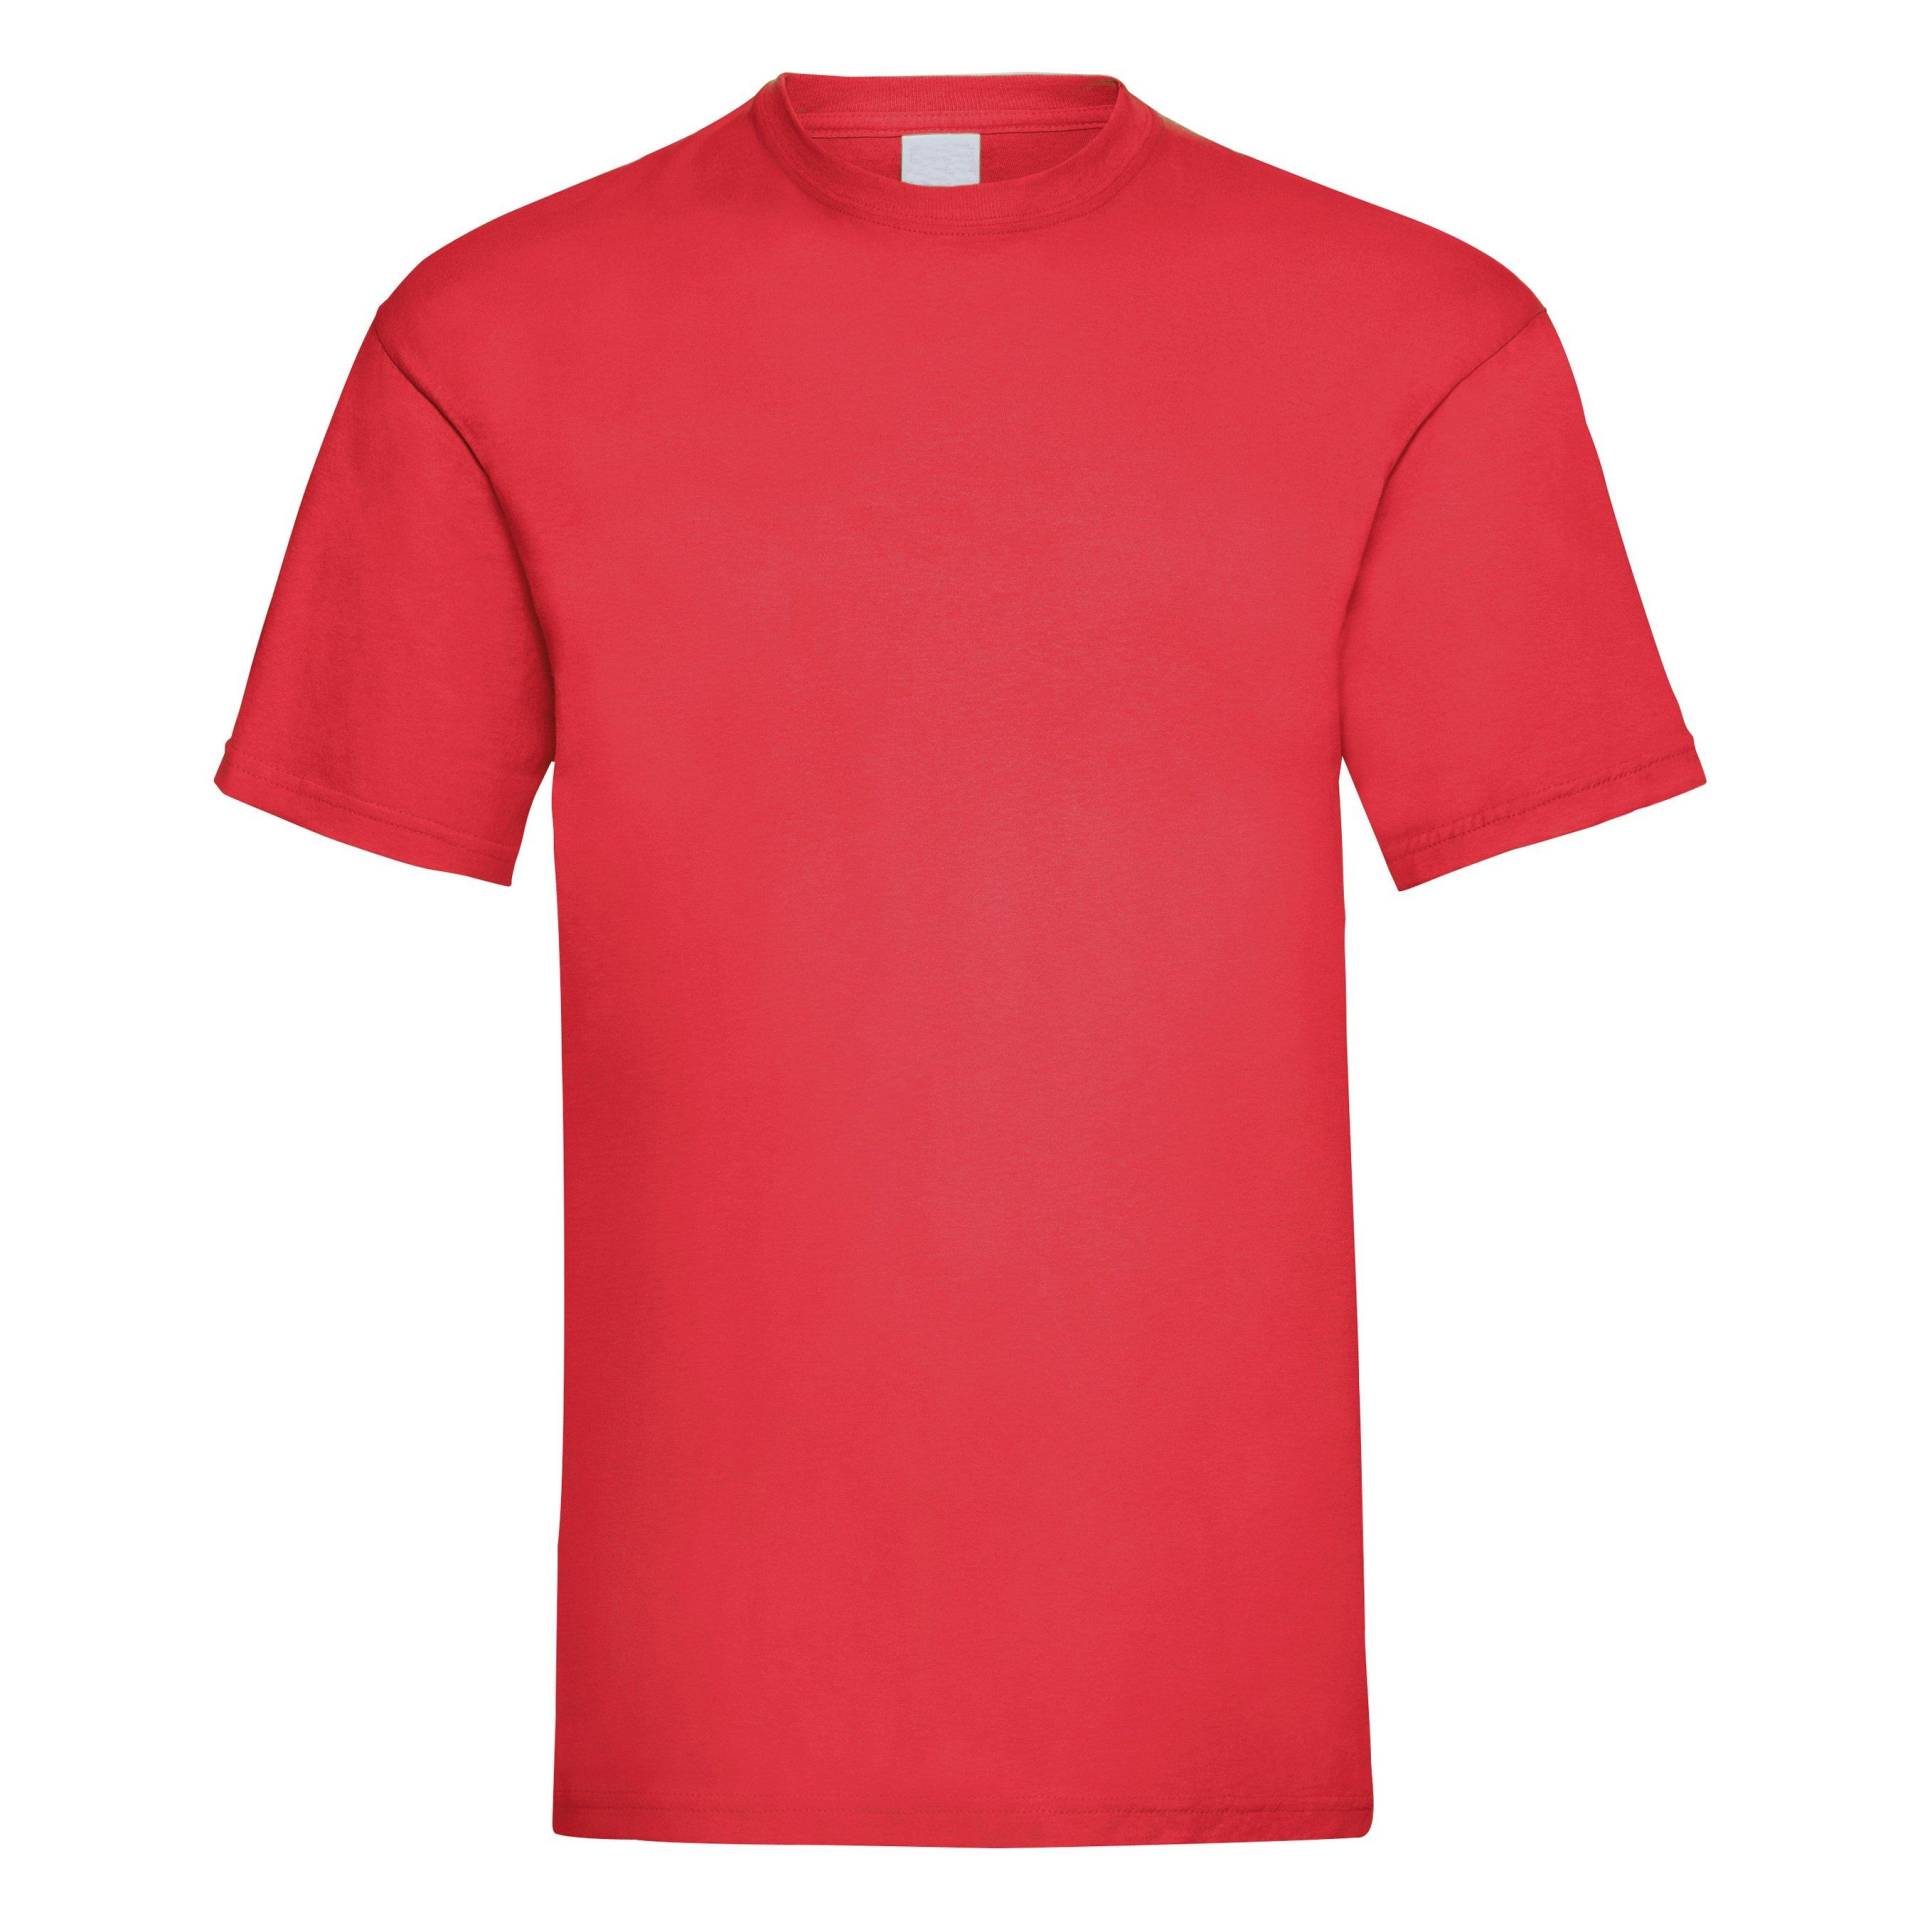 Value Kurzarm Freizeit Tshirt Herren Rot Bunt L von Universal Textiles